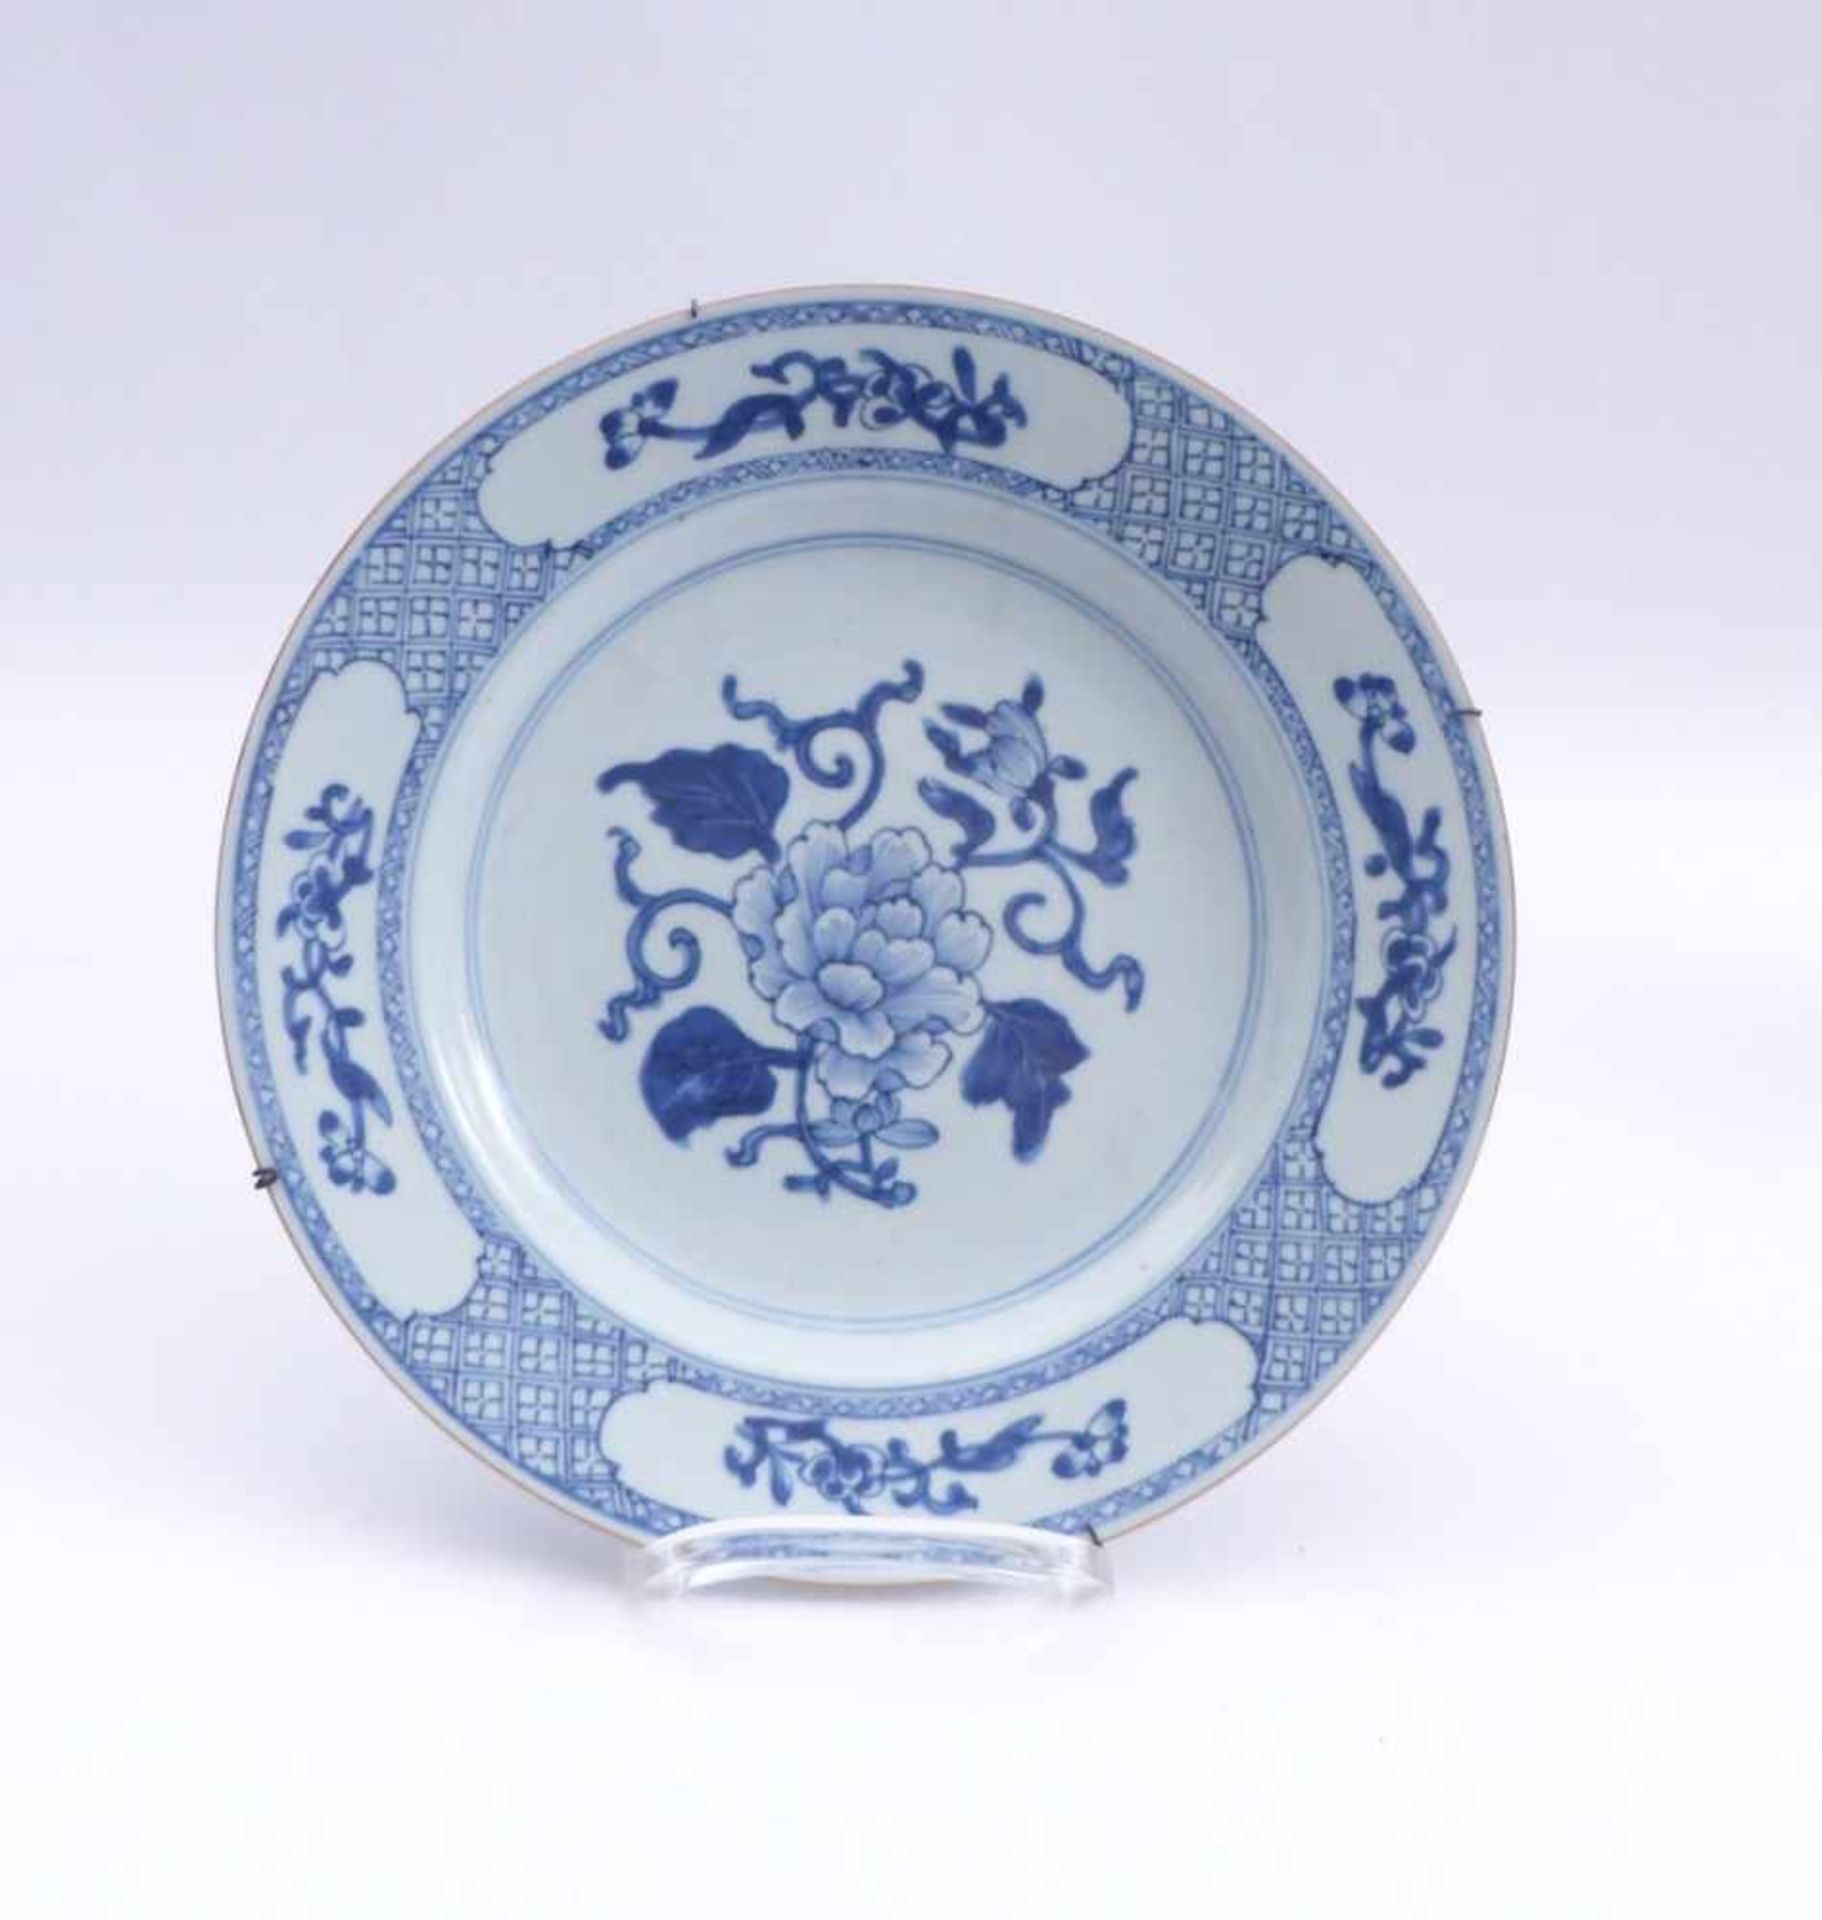 Teller mit PäonienblüteChina, Qing-Dynastie, 18./19. Jh.Runde, glatte Form; im Spiegel große